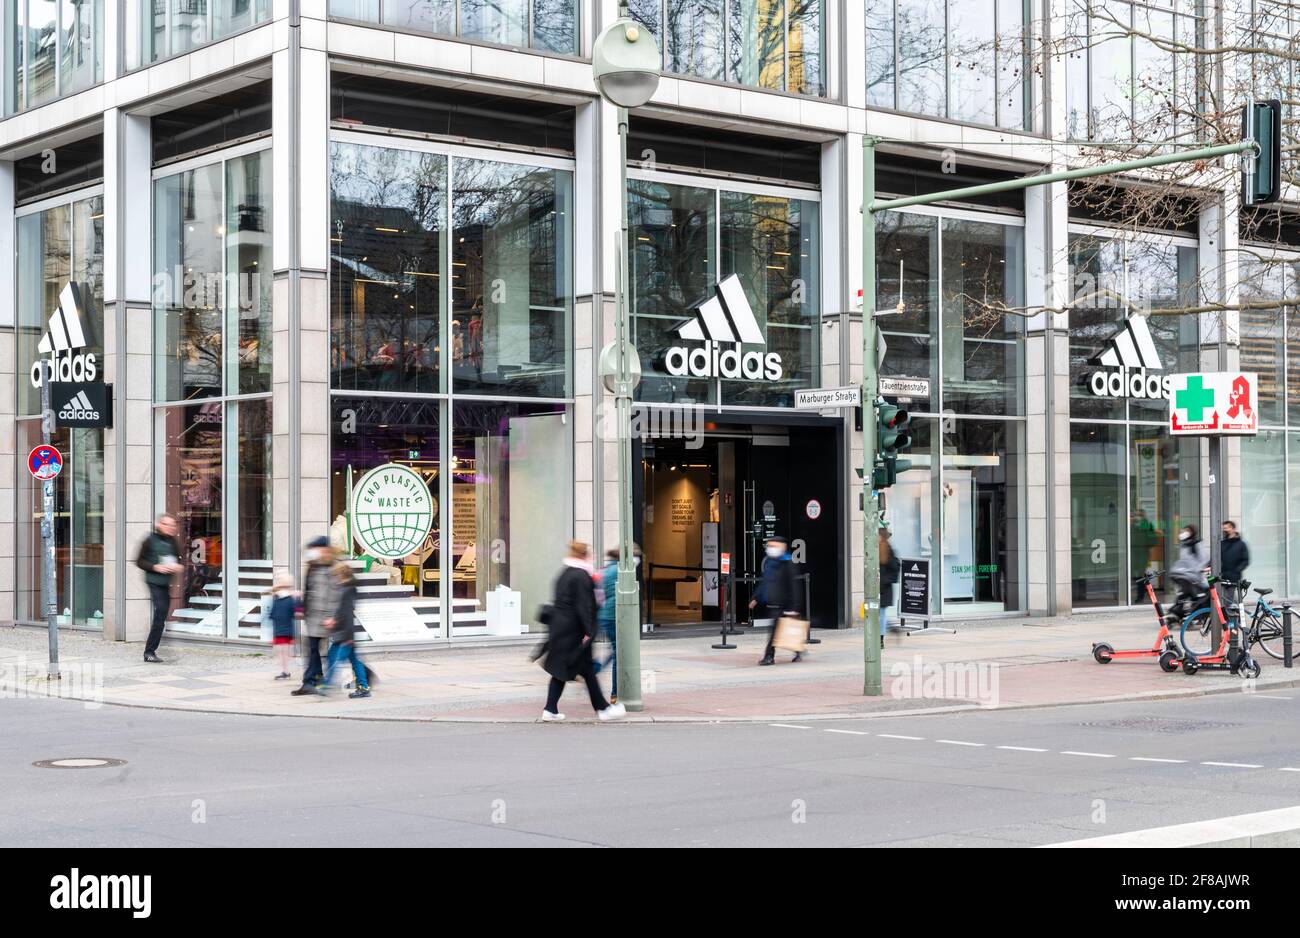 Berlín, Alemania. 12th de Abr de 2021. La gente pasa por la tienda Adidas en Tauentzienstrasse. Los grandes fabricantes de marcas como Adidas, Miele y Co. Están eludiendo cada vez más